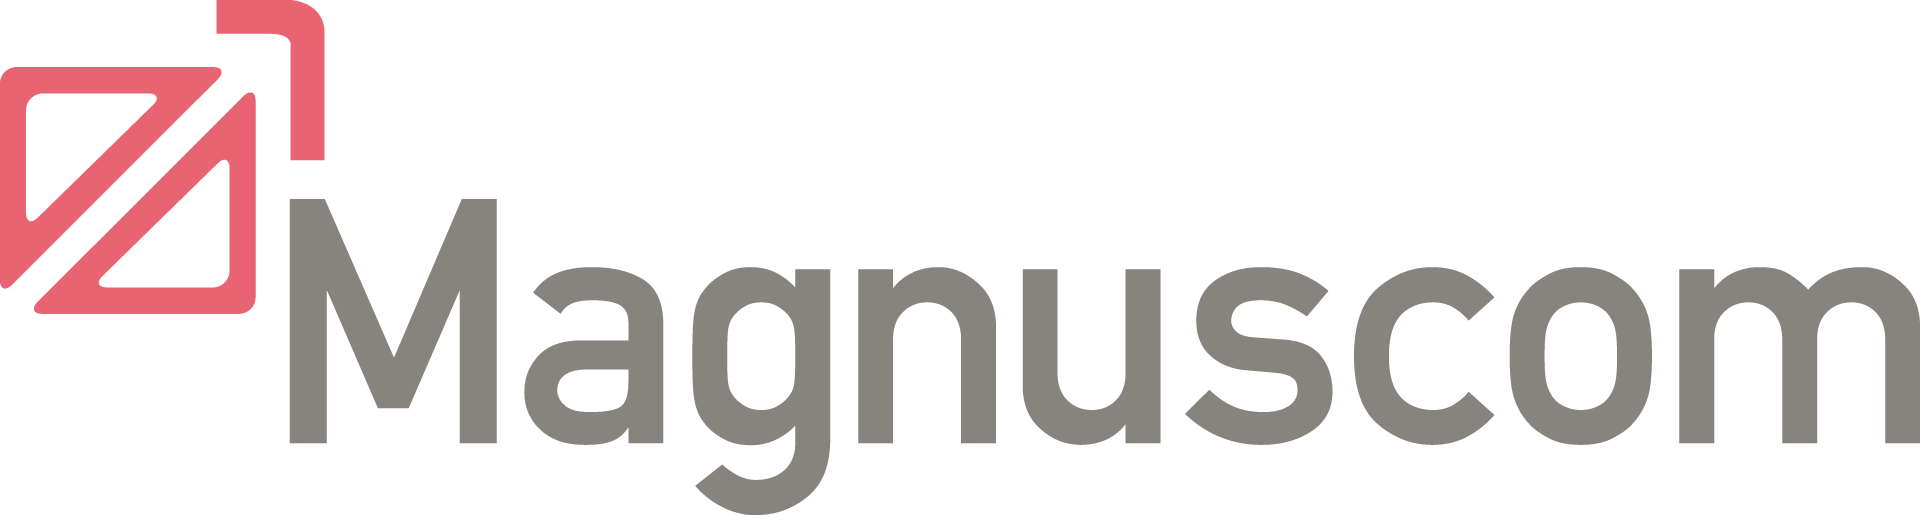 Magnuscom UG logo